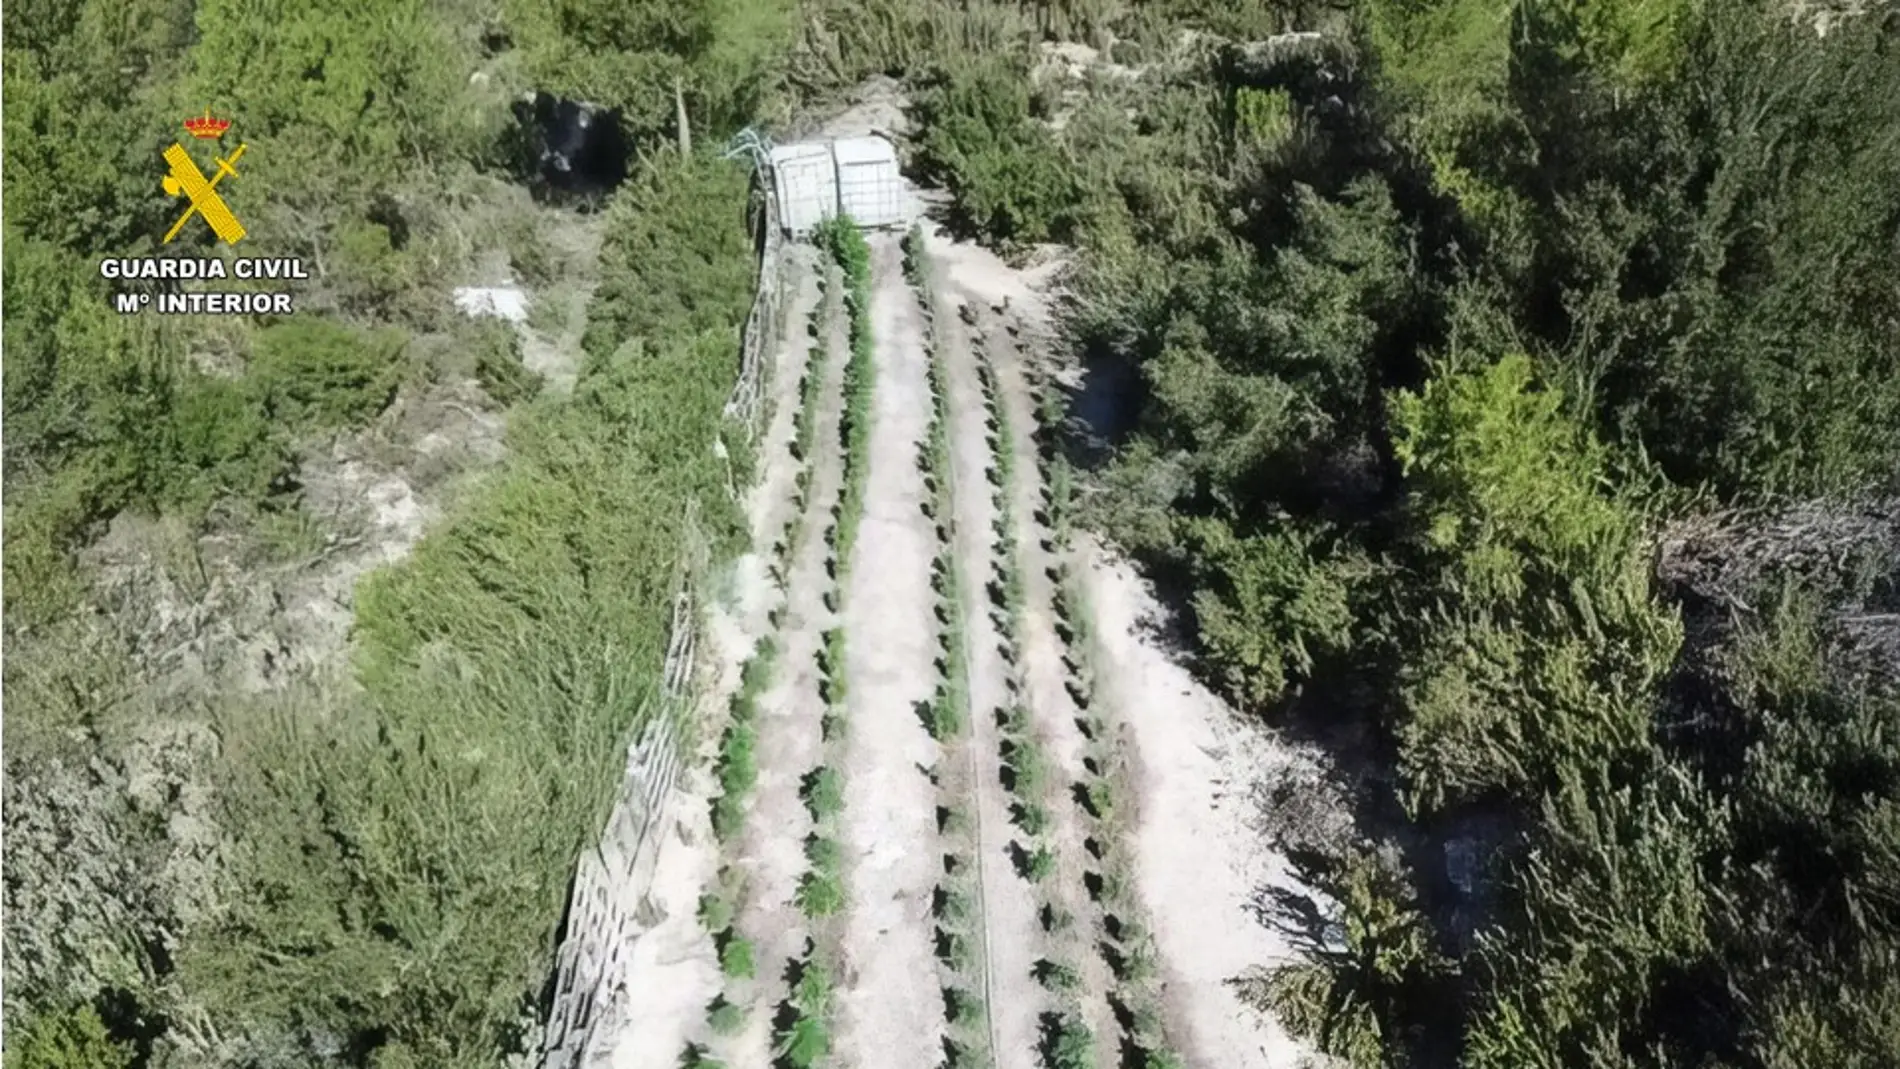 Vista aérea de una de las plantaciones de marihuana desmanteladas.